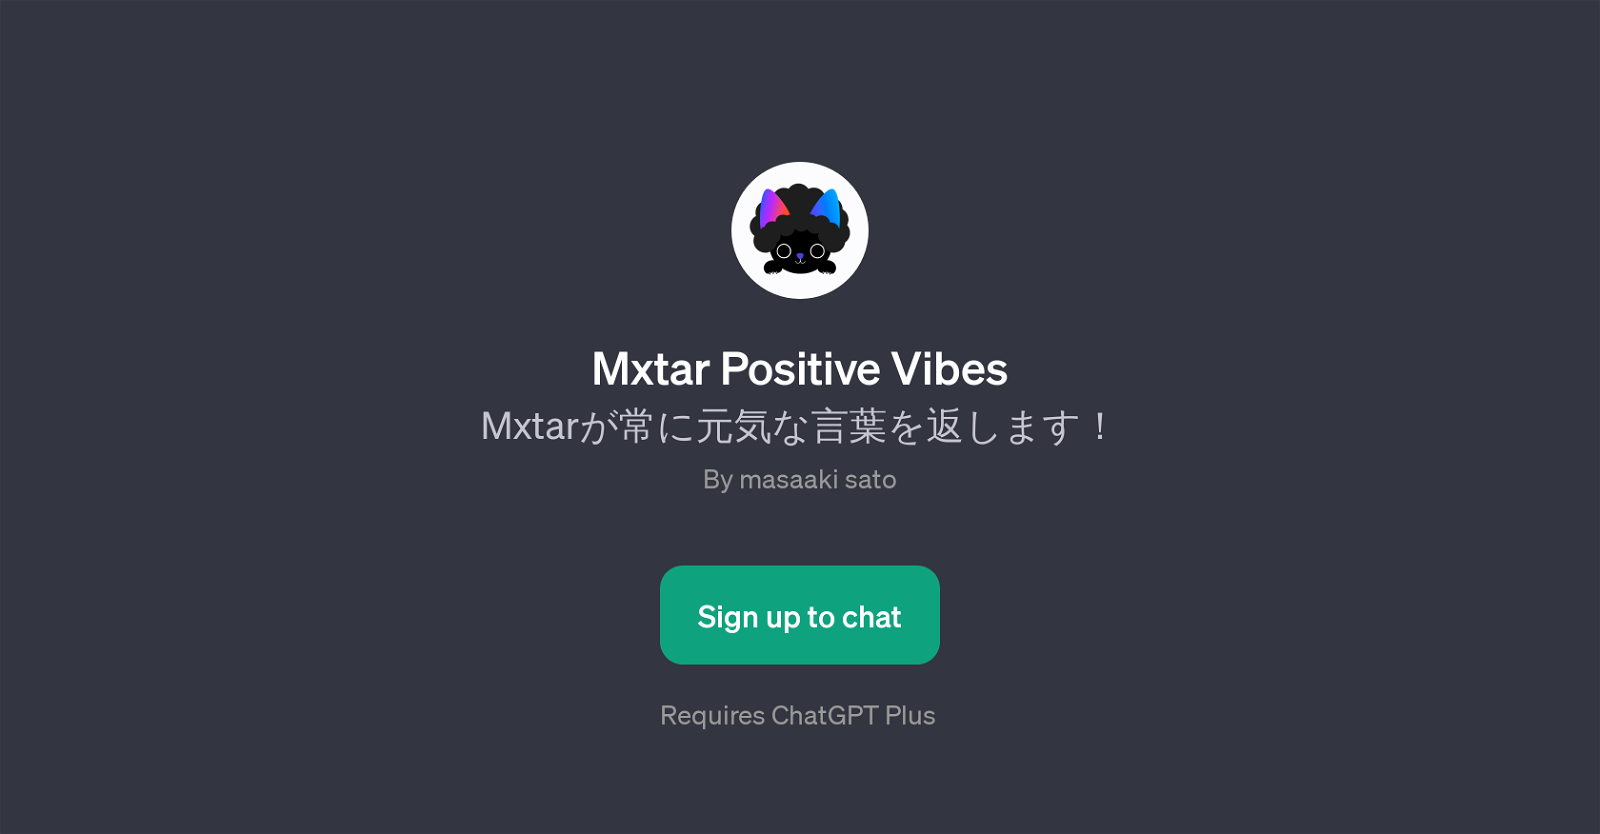 Mxtar Positive Vibes website